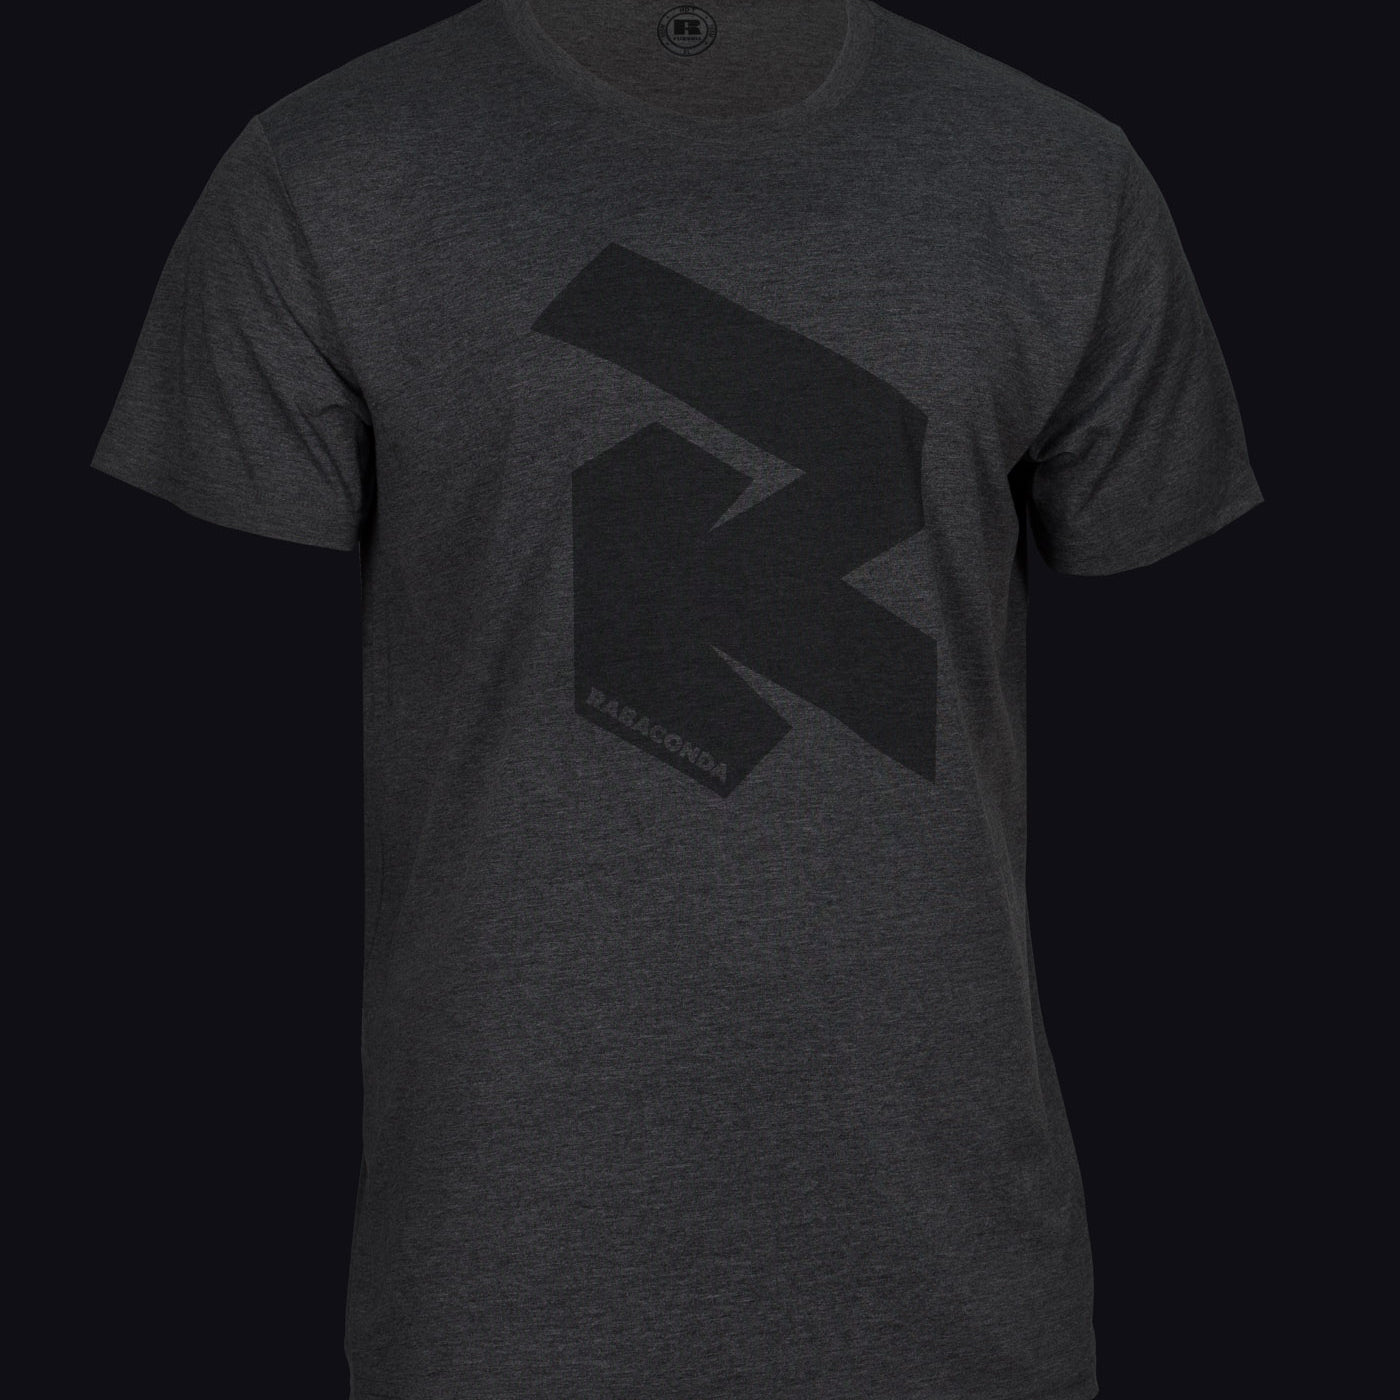 RabacondaRipperT-shirt-1.jpg